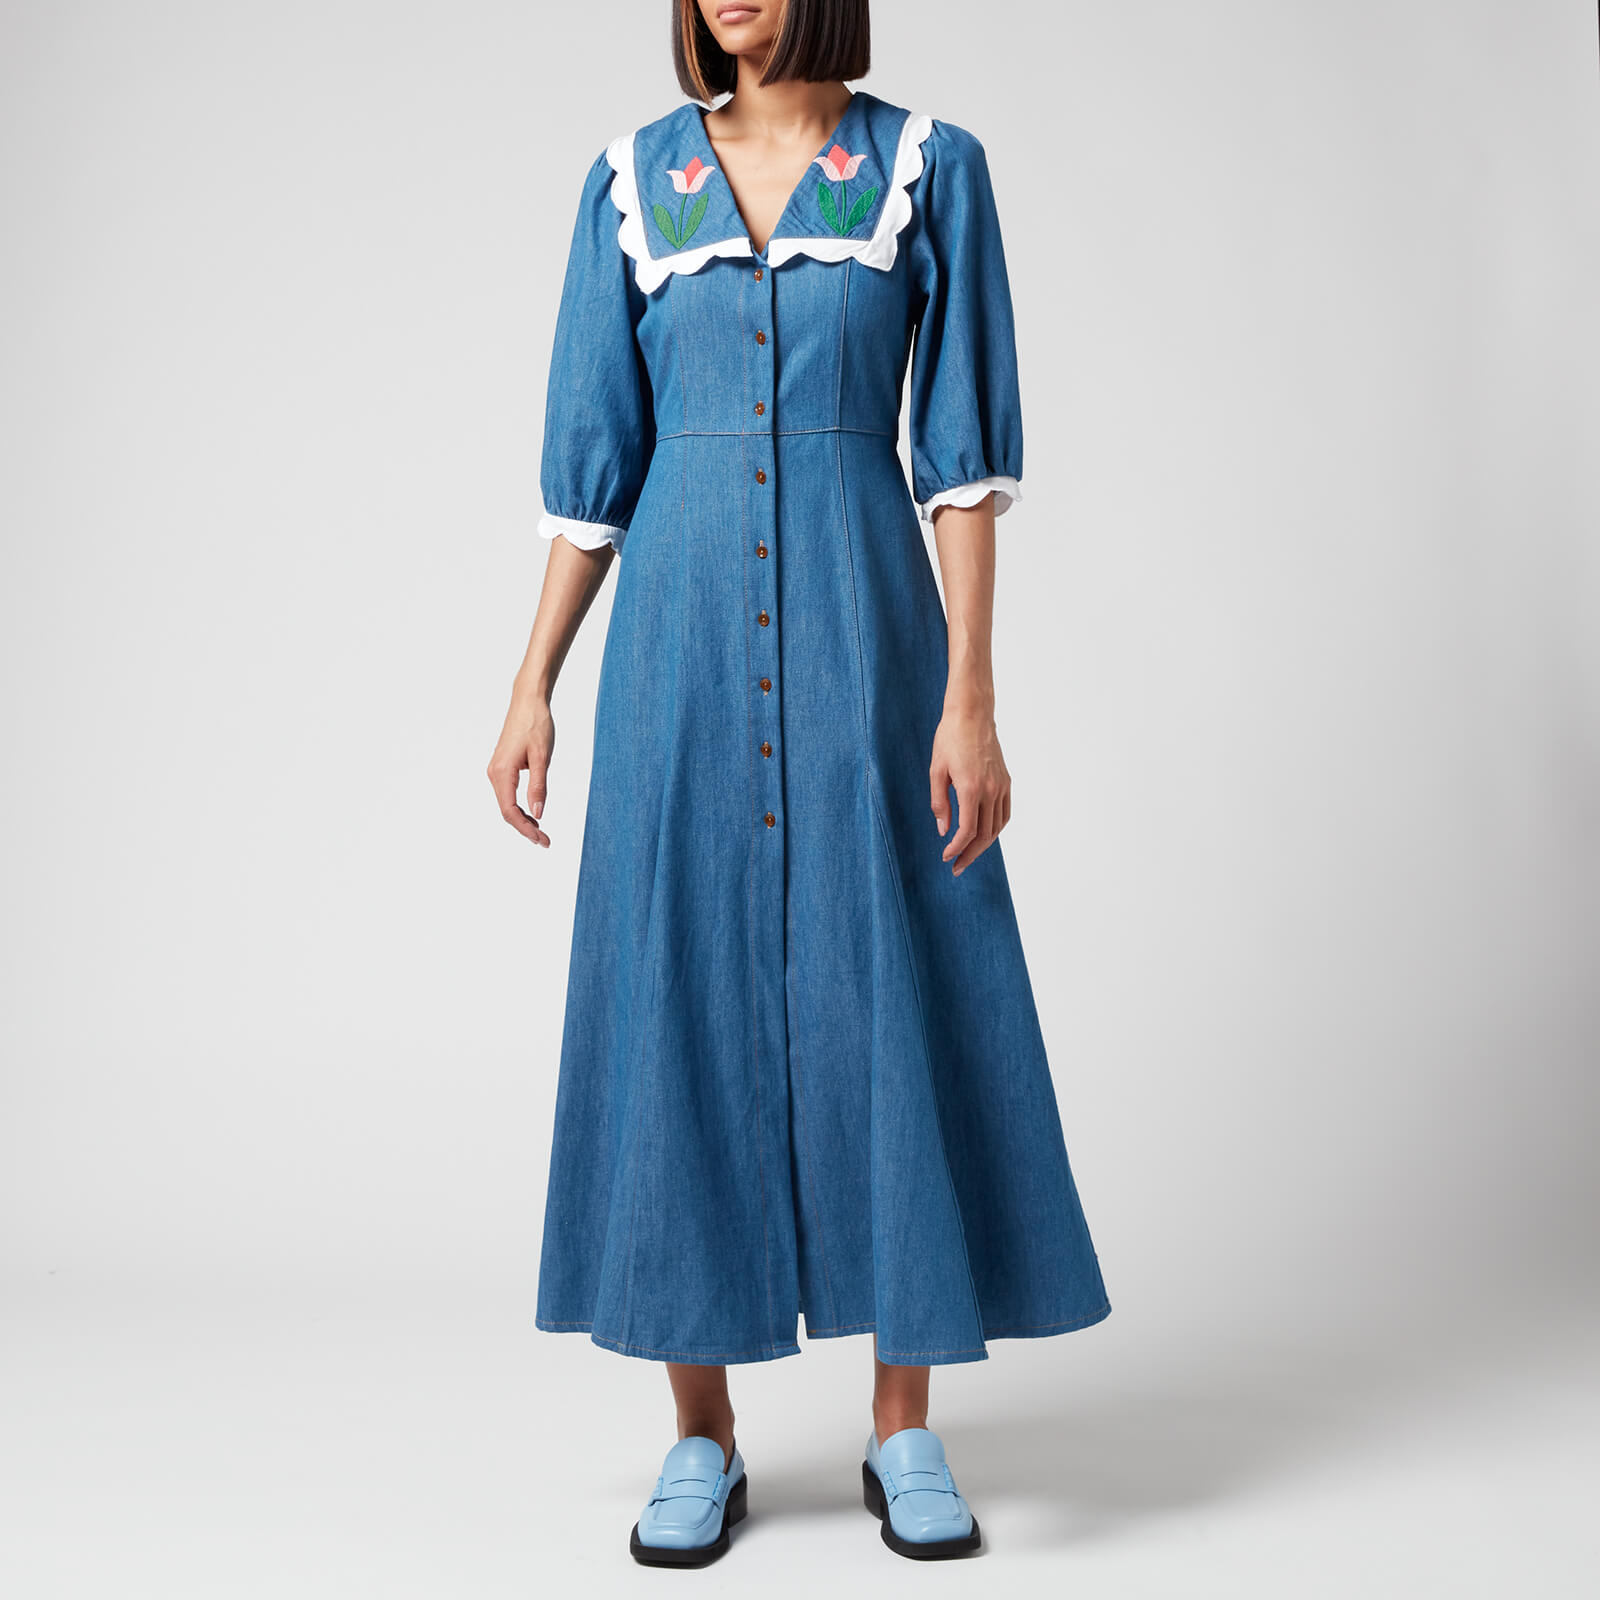 RIXO Women's Ellen Denim Dress - Denim Tulip Embroidery - XXS/UK 6